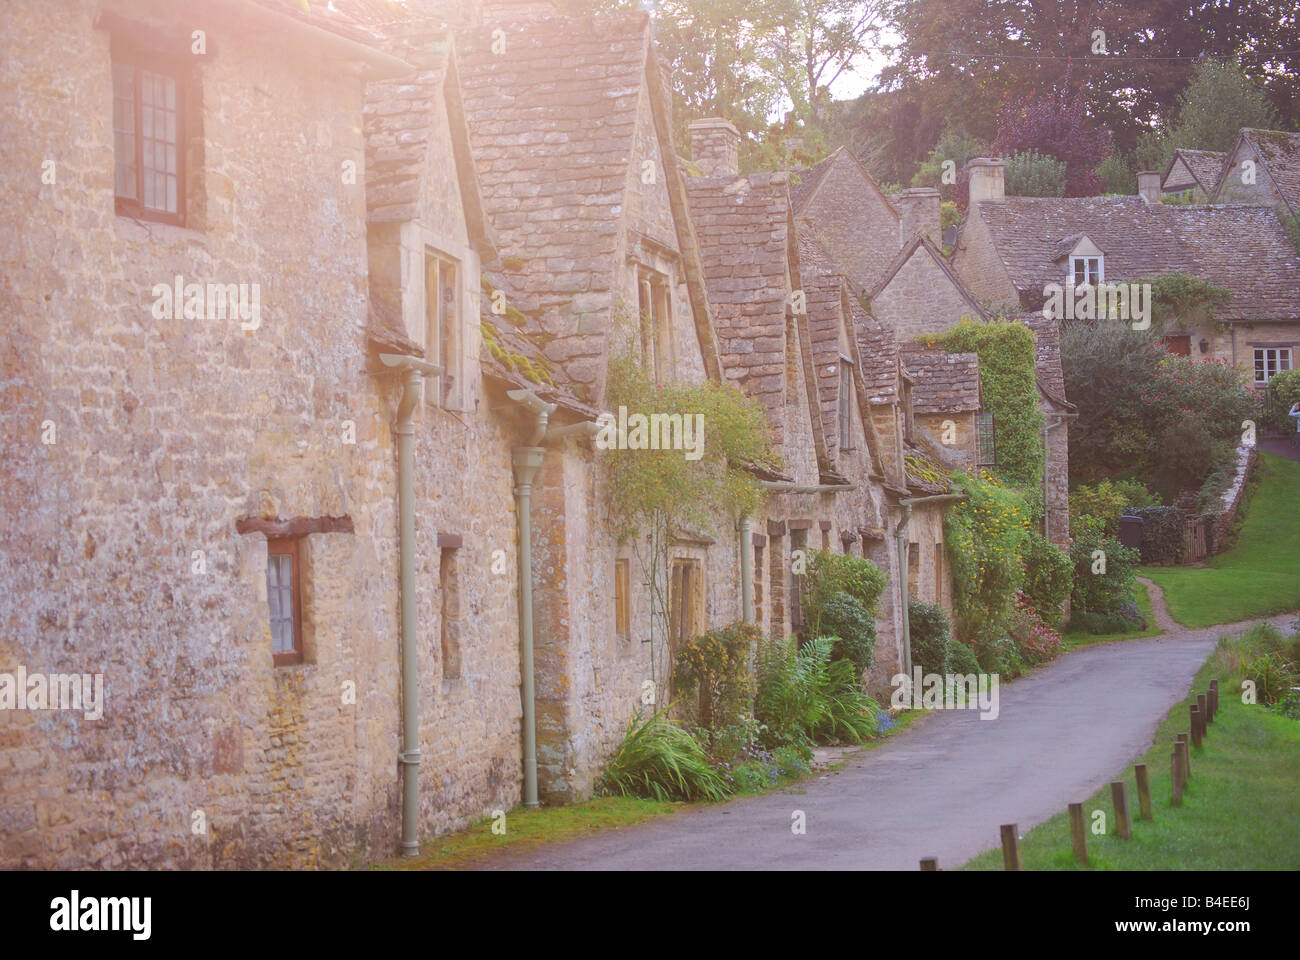 Row of Cotswold stone cottages, Bibury, Gloucestershire, England, United Kingdom Stock Photo